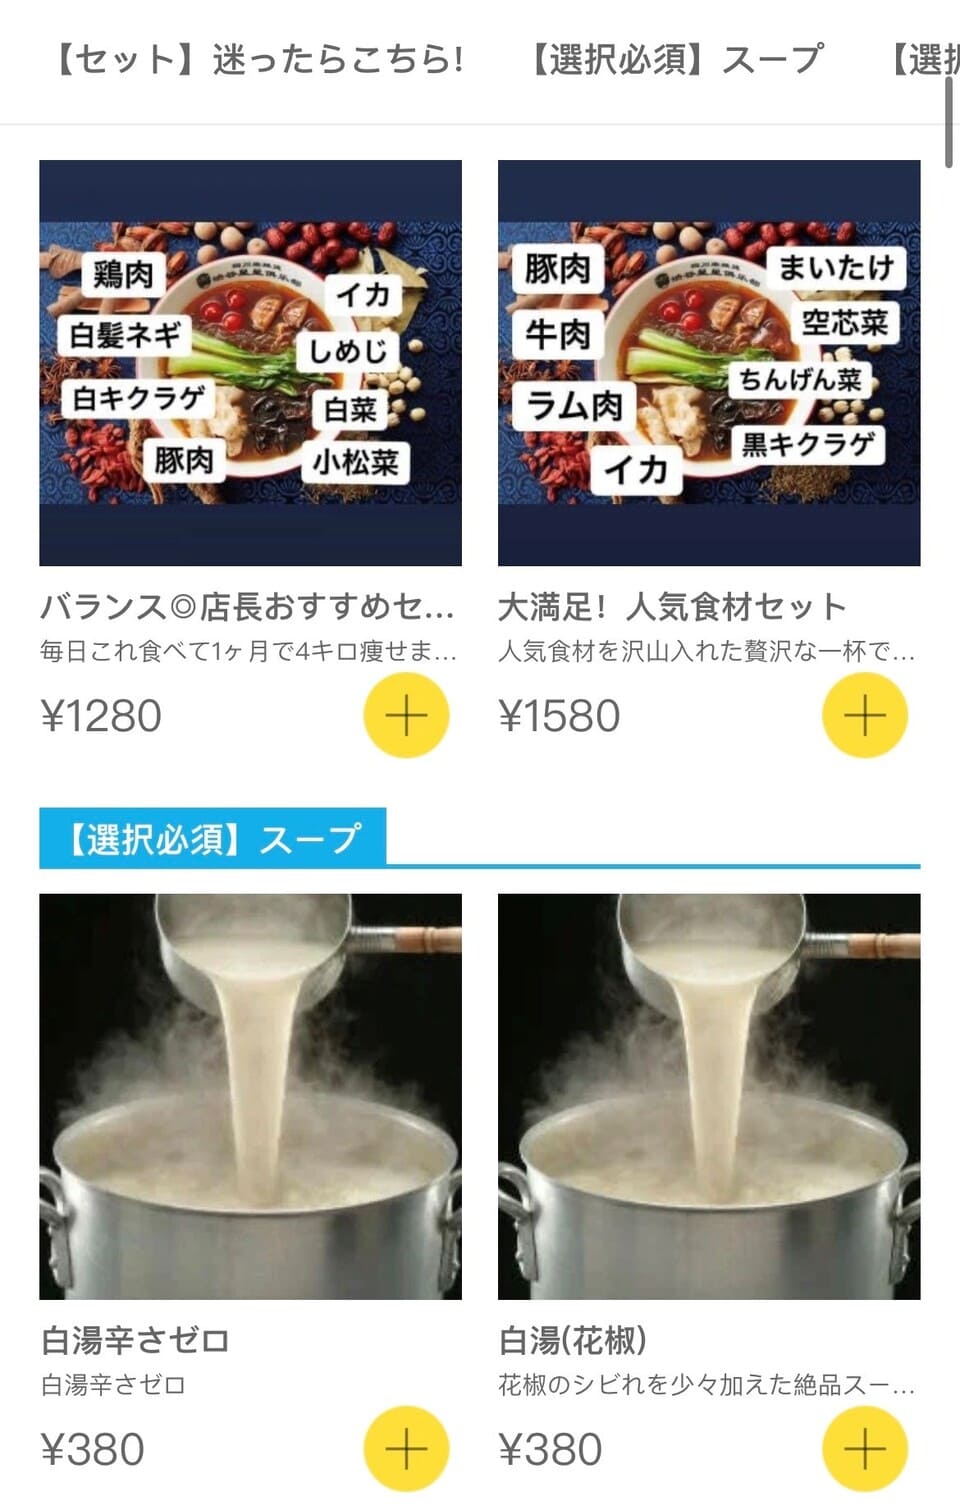 スープと麺の種類を選ぶ画面